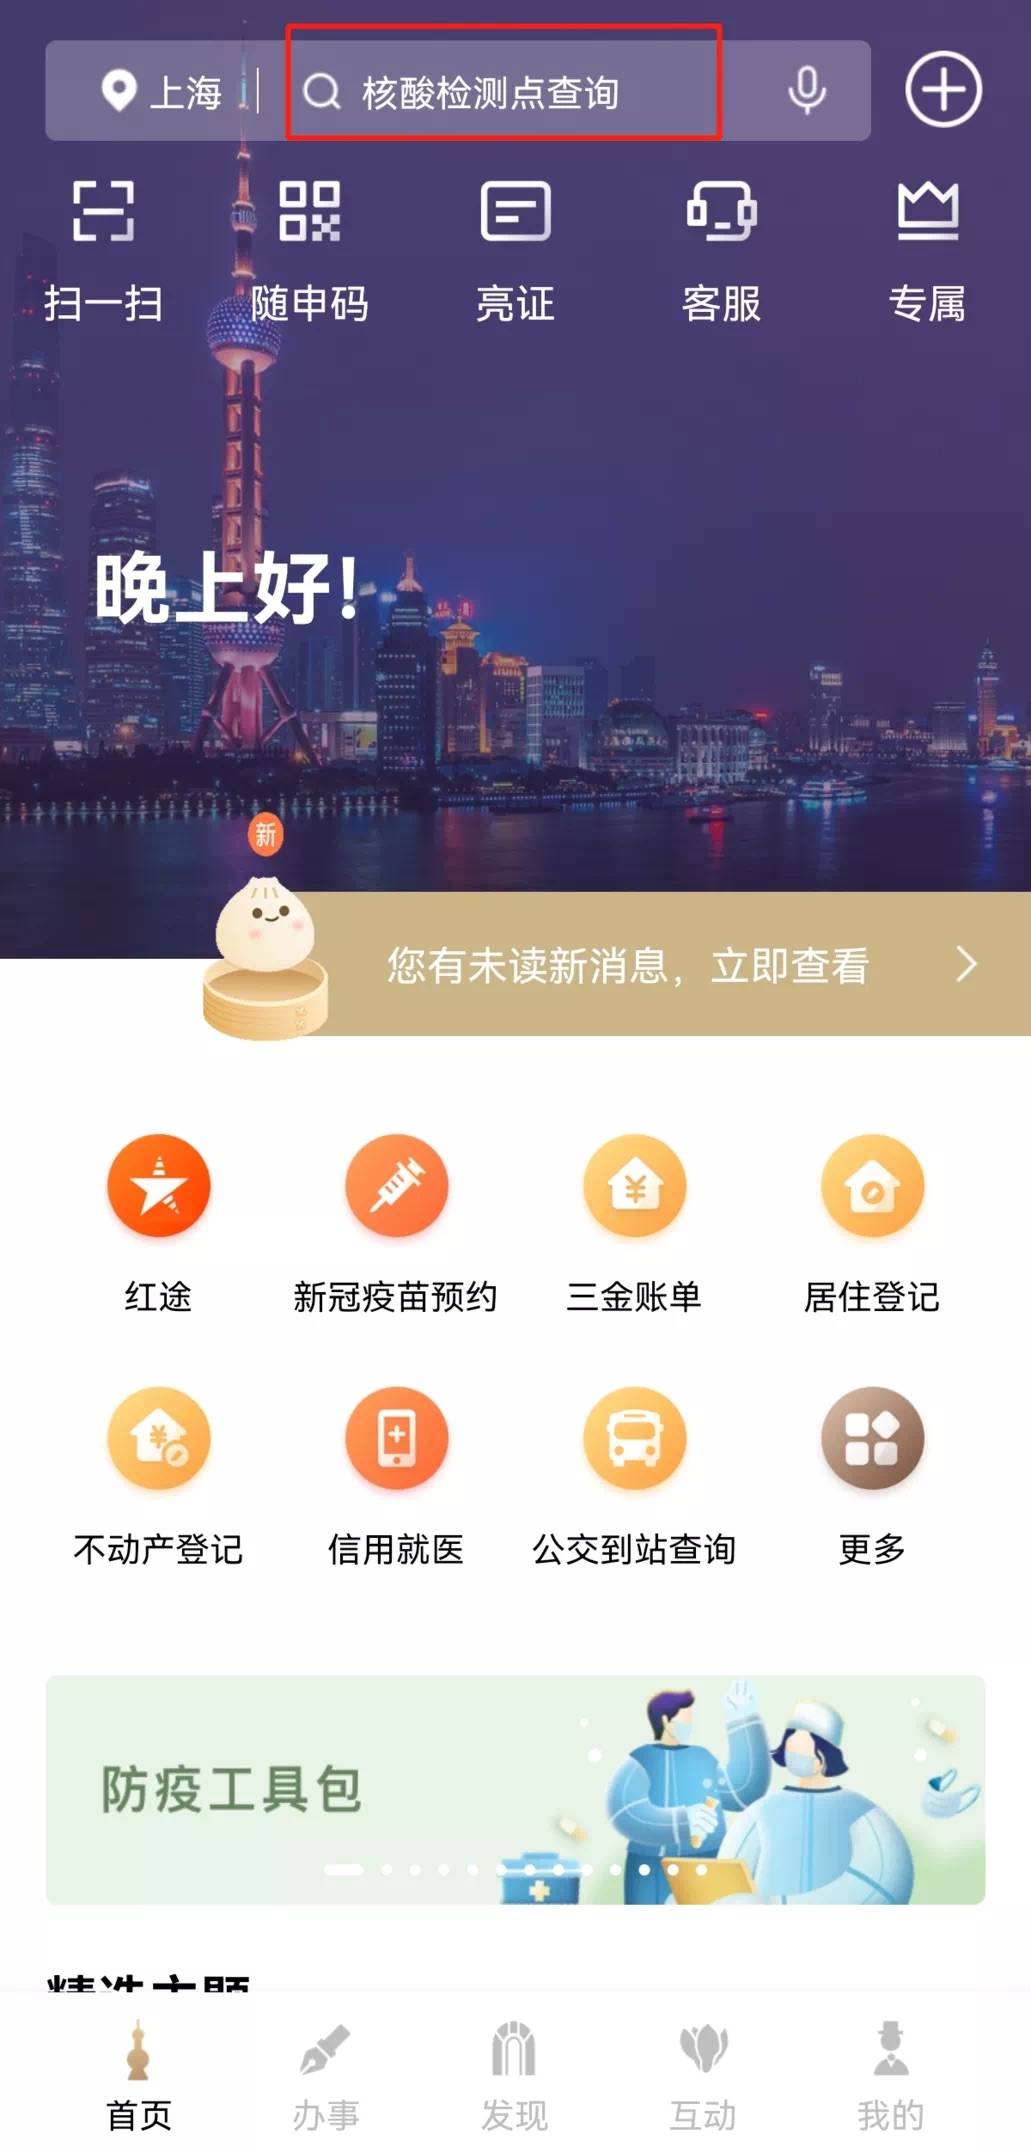 【问答】上海一网通办可以在线办理哪些